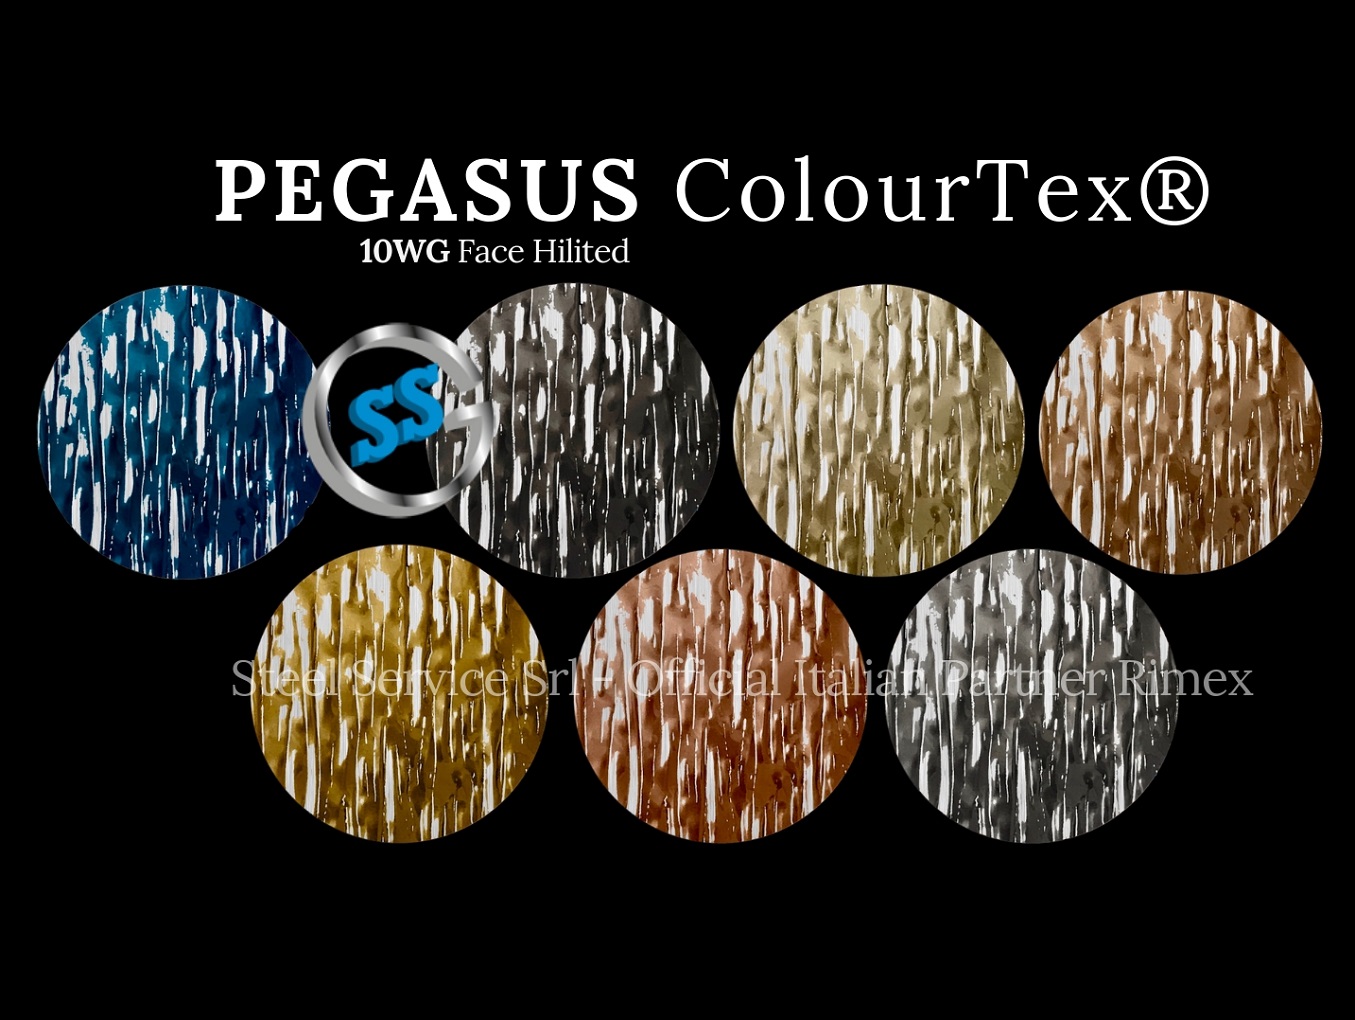 Lamiere bugnate colorate, Palette varianti elettro-colorate inox ColourTex delle lamiere inox 10WG PEGASUS, inox rigidizzato galvanico 10WG PEGASUS, inox legno elettro-colorato